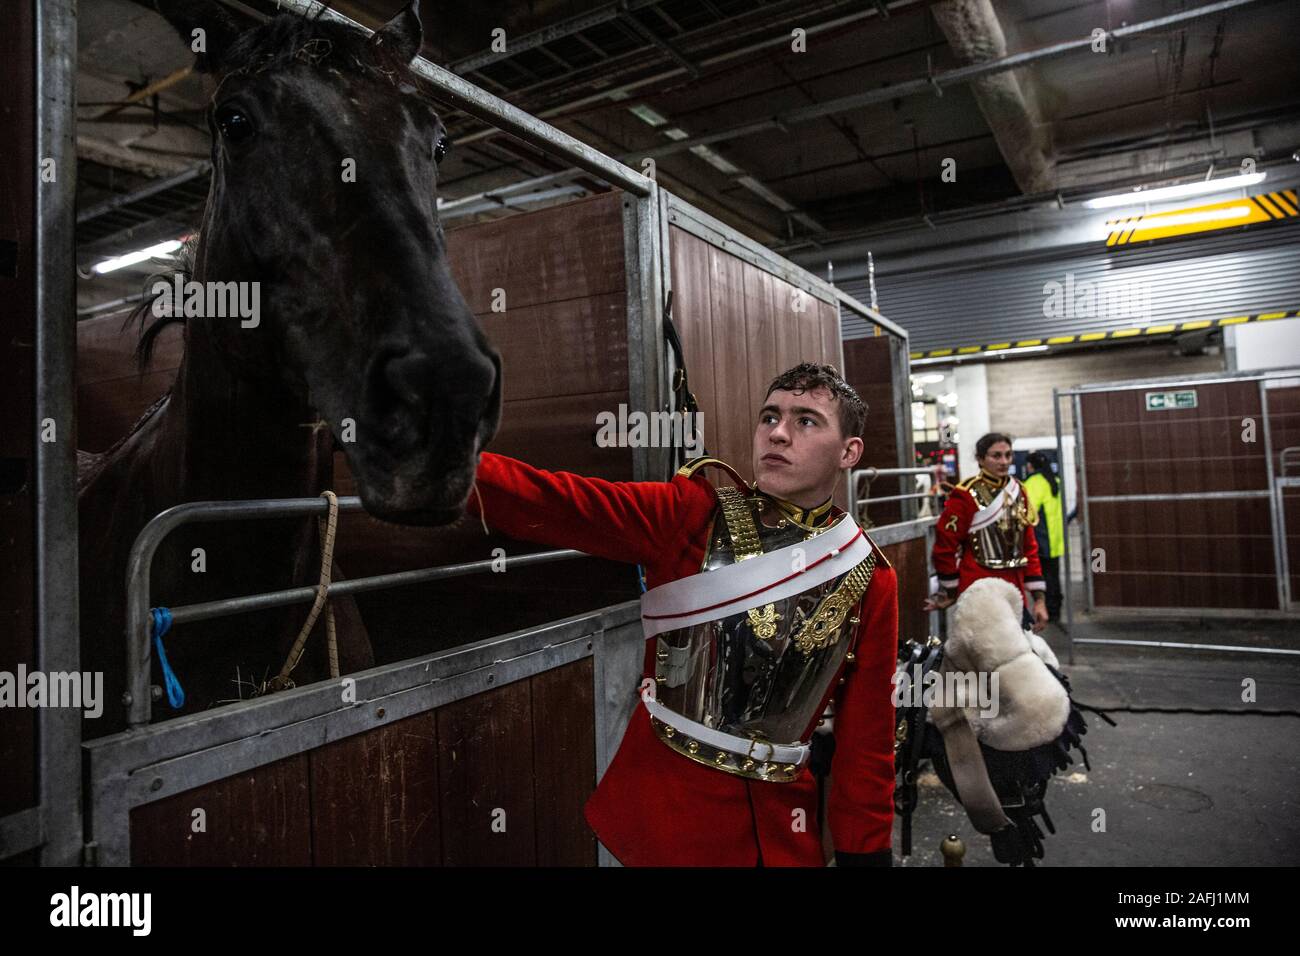 Dans les coulisses du Household Cavalry régiment monté avant leurs performances cette année à Olympie, la London International Horse Show, au Royaume-Uni. Banque D'Images